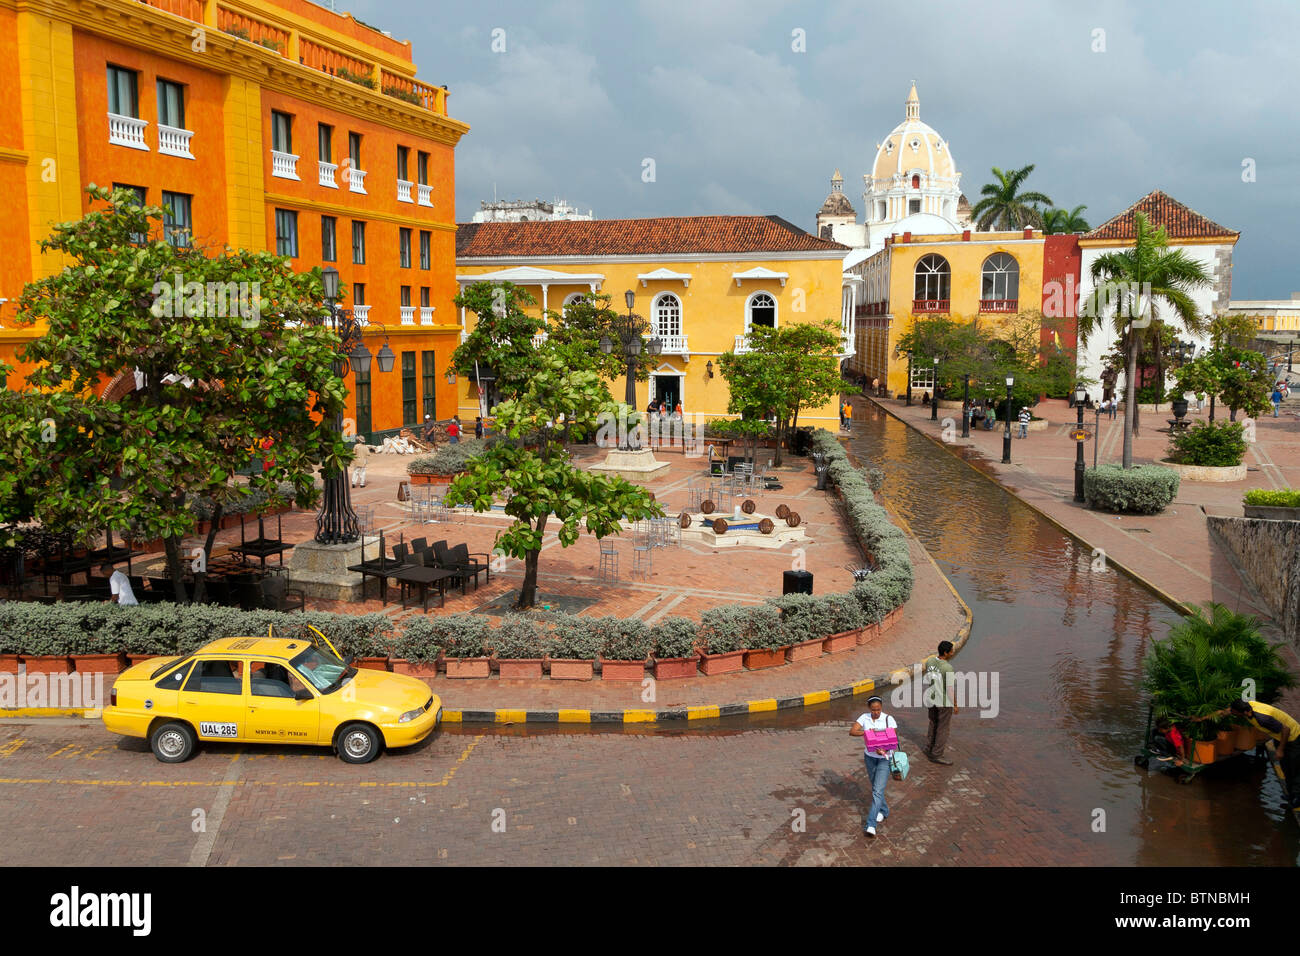 Una imagen colorida de Cartagena, Colombia, tomado de los viejos muros Foto de stock